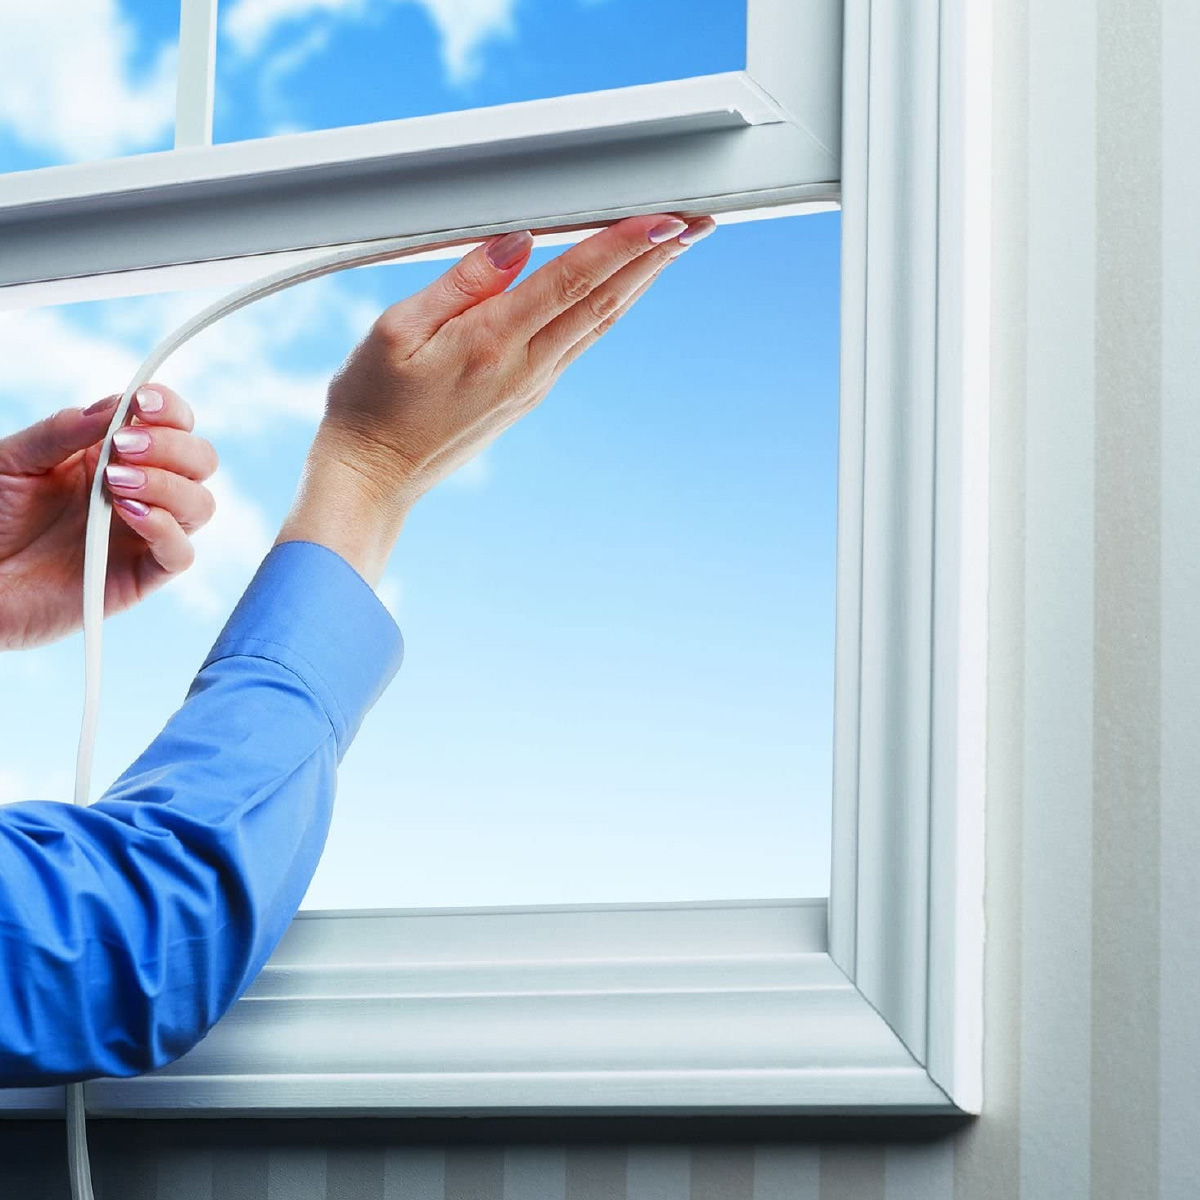 Kauçuk Kapı - Pencere Bandı <p>* Kendinden Yapışkanlı. Kapı ve pencere için D tip kauçuk bant. 2’li olarak kapı, tekli olarak pencerelerde kullanılır.<br />
* Soğuk havalarda izolasyon sağlayıp evinizi sıcak tutar. Hava nem geçirmez.<br />
<br />
* Kurulumu tamamladıktan sonra bantın alt kısmında bulunan yapışkanın sağlam bir şekilde tutunduğundan emin olmak için sıkıca baskı uygulayın. Eğer uygulama yapılan alanda sıcaklık 10°C altındaysa bant kısmını saç kurutma fön makinası ile ısıtıp sonrasında zemine yapıştırabilirsiniz. Uygulama işleminden sonra 24 saat boyunca bantı sürtünme ve ovalamaktan kaçının. Yağlı zeminler, küflü ve paslı zeminler, tozlu zeminler uygulama için önerilmez. Uygulama yapılacak alanın temiz olması gerekmektedir.</p>
